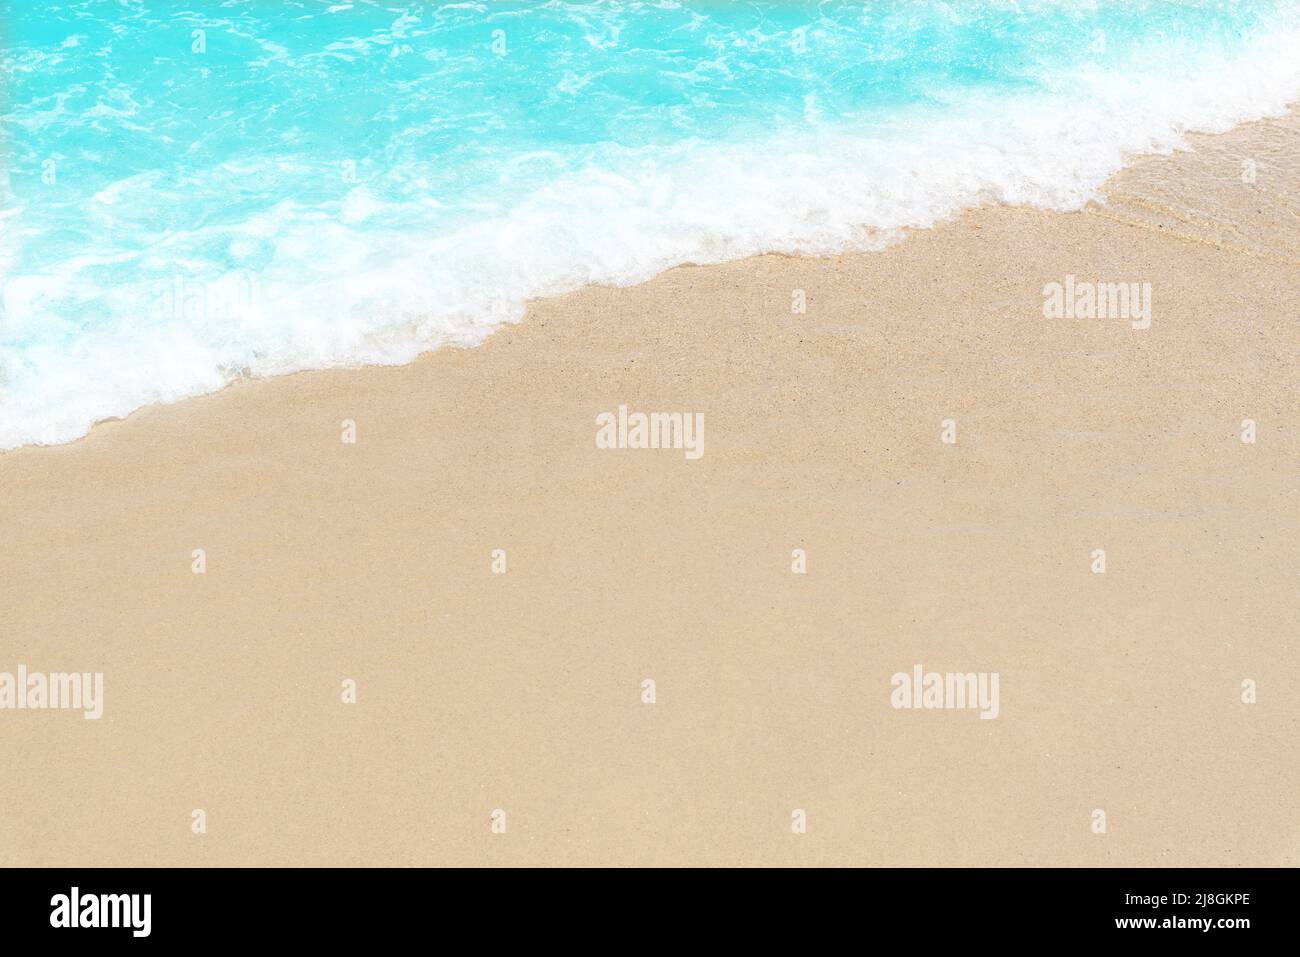 Fond de plage vide. Sable et mer bleue avec espace de copie Banque D'Images